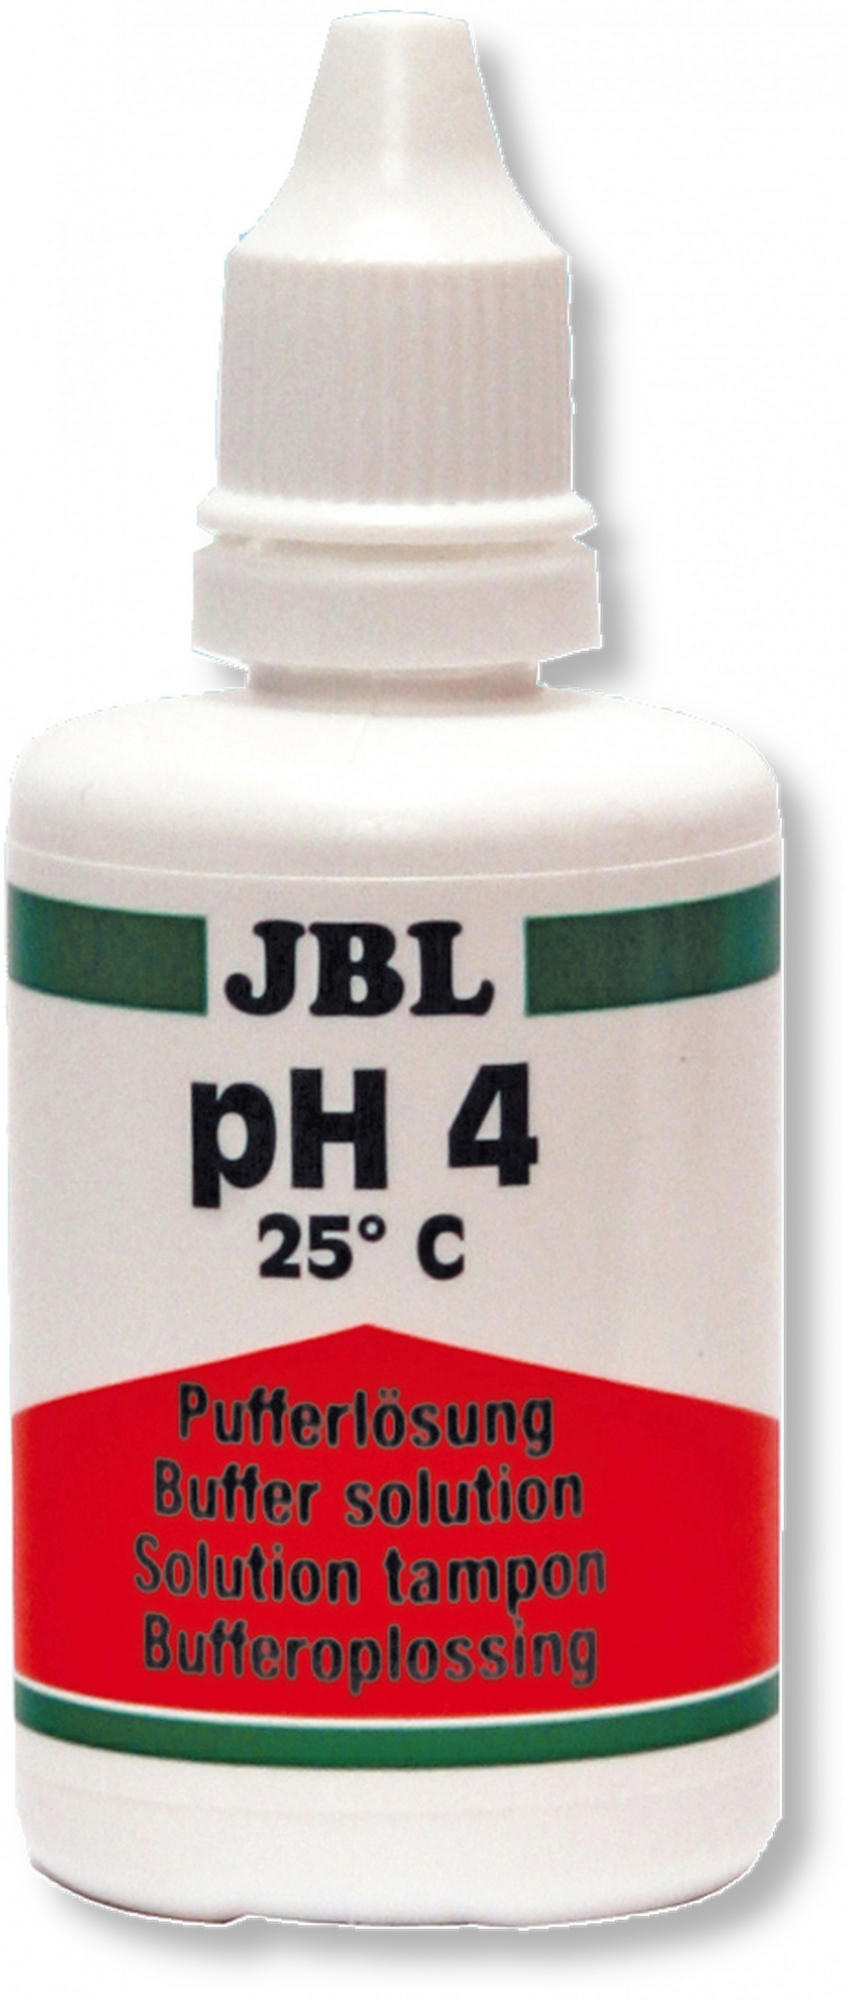 JBL Solution Tampon Standard pH 4,0 et 7,0